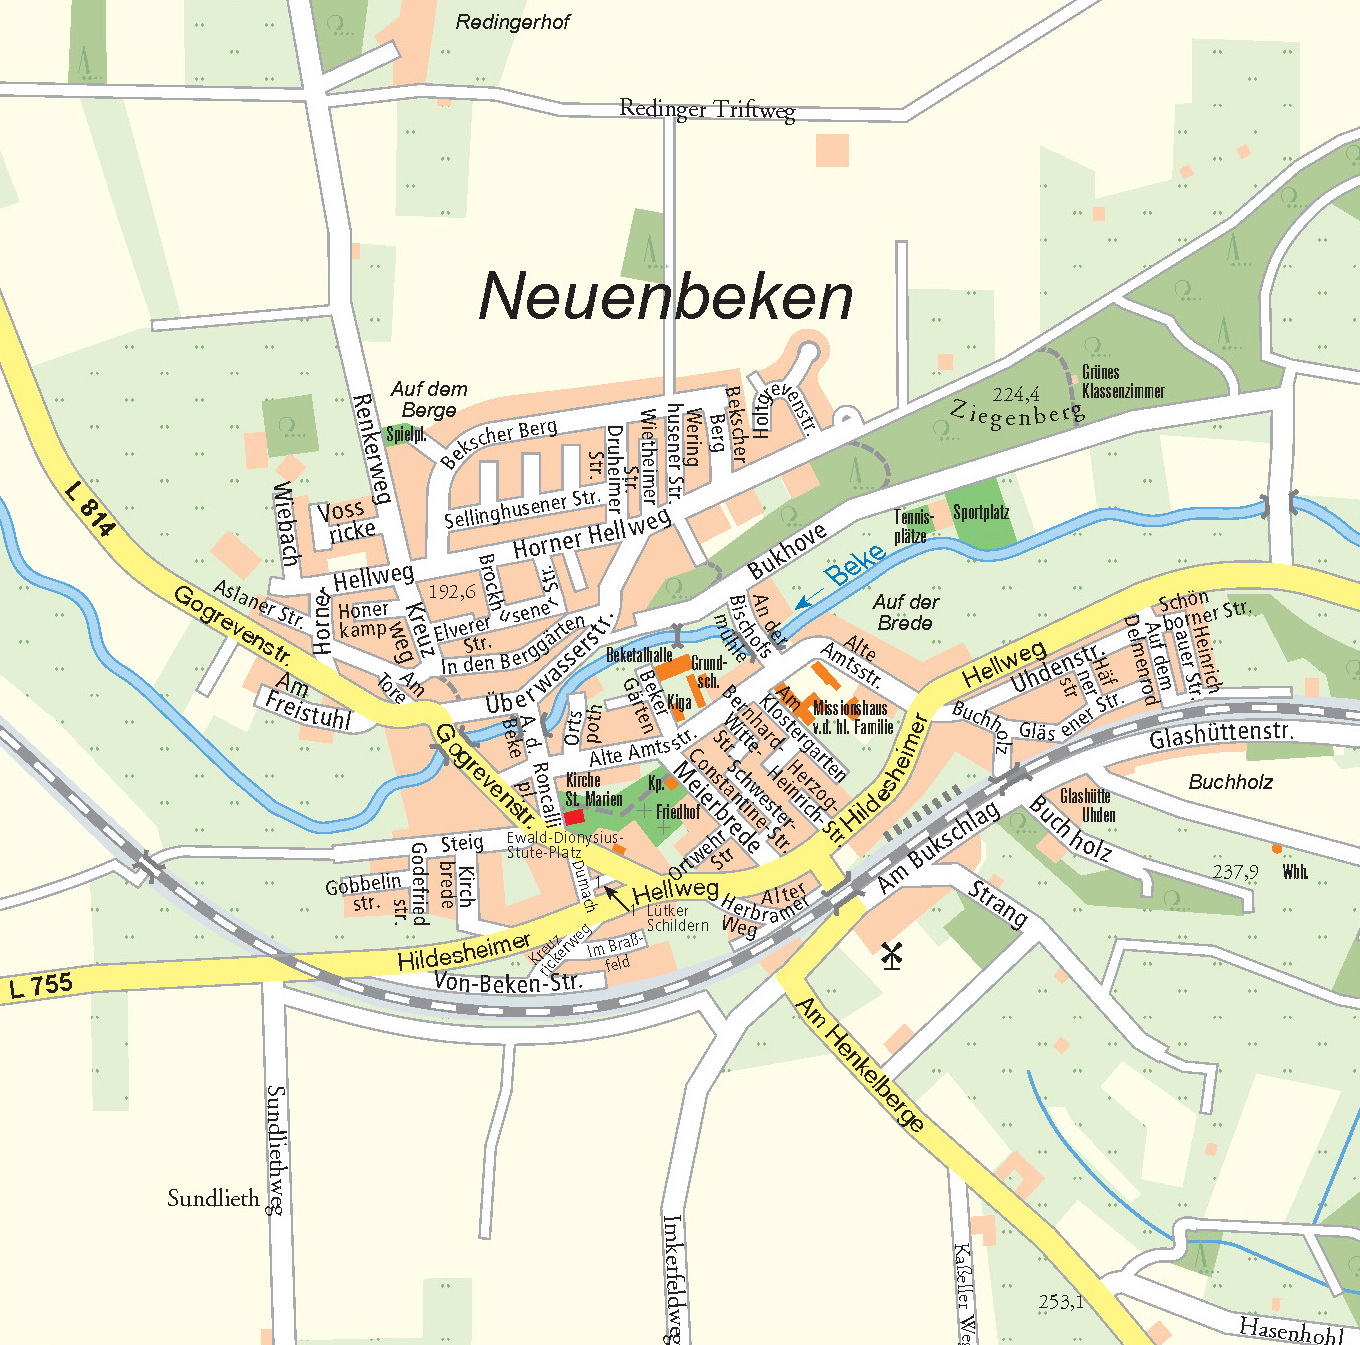 Diese Karte ist ein Ausschnitt aus dem amtlichen Stadtplan Paderborn 1:20000. Freundlicher Weise zur Verfügung gestellt vom Amt für Vermessung und Geoinformation der Stadt Paderborn. Vervielfältigung und weitere Verbreitung nur mit Zustimmung der Stadt Paderborn.